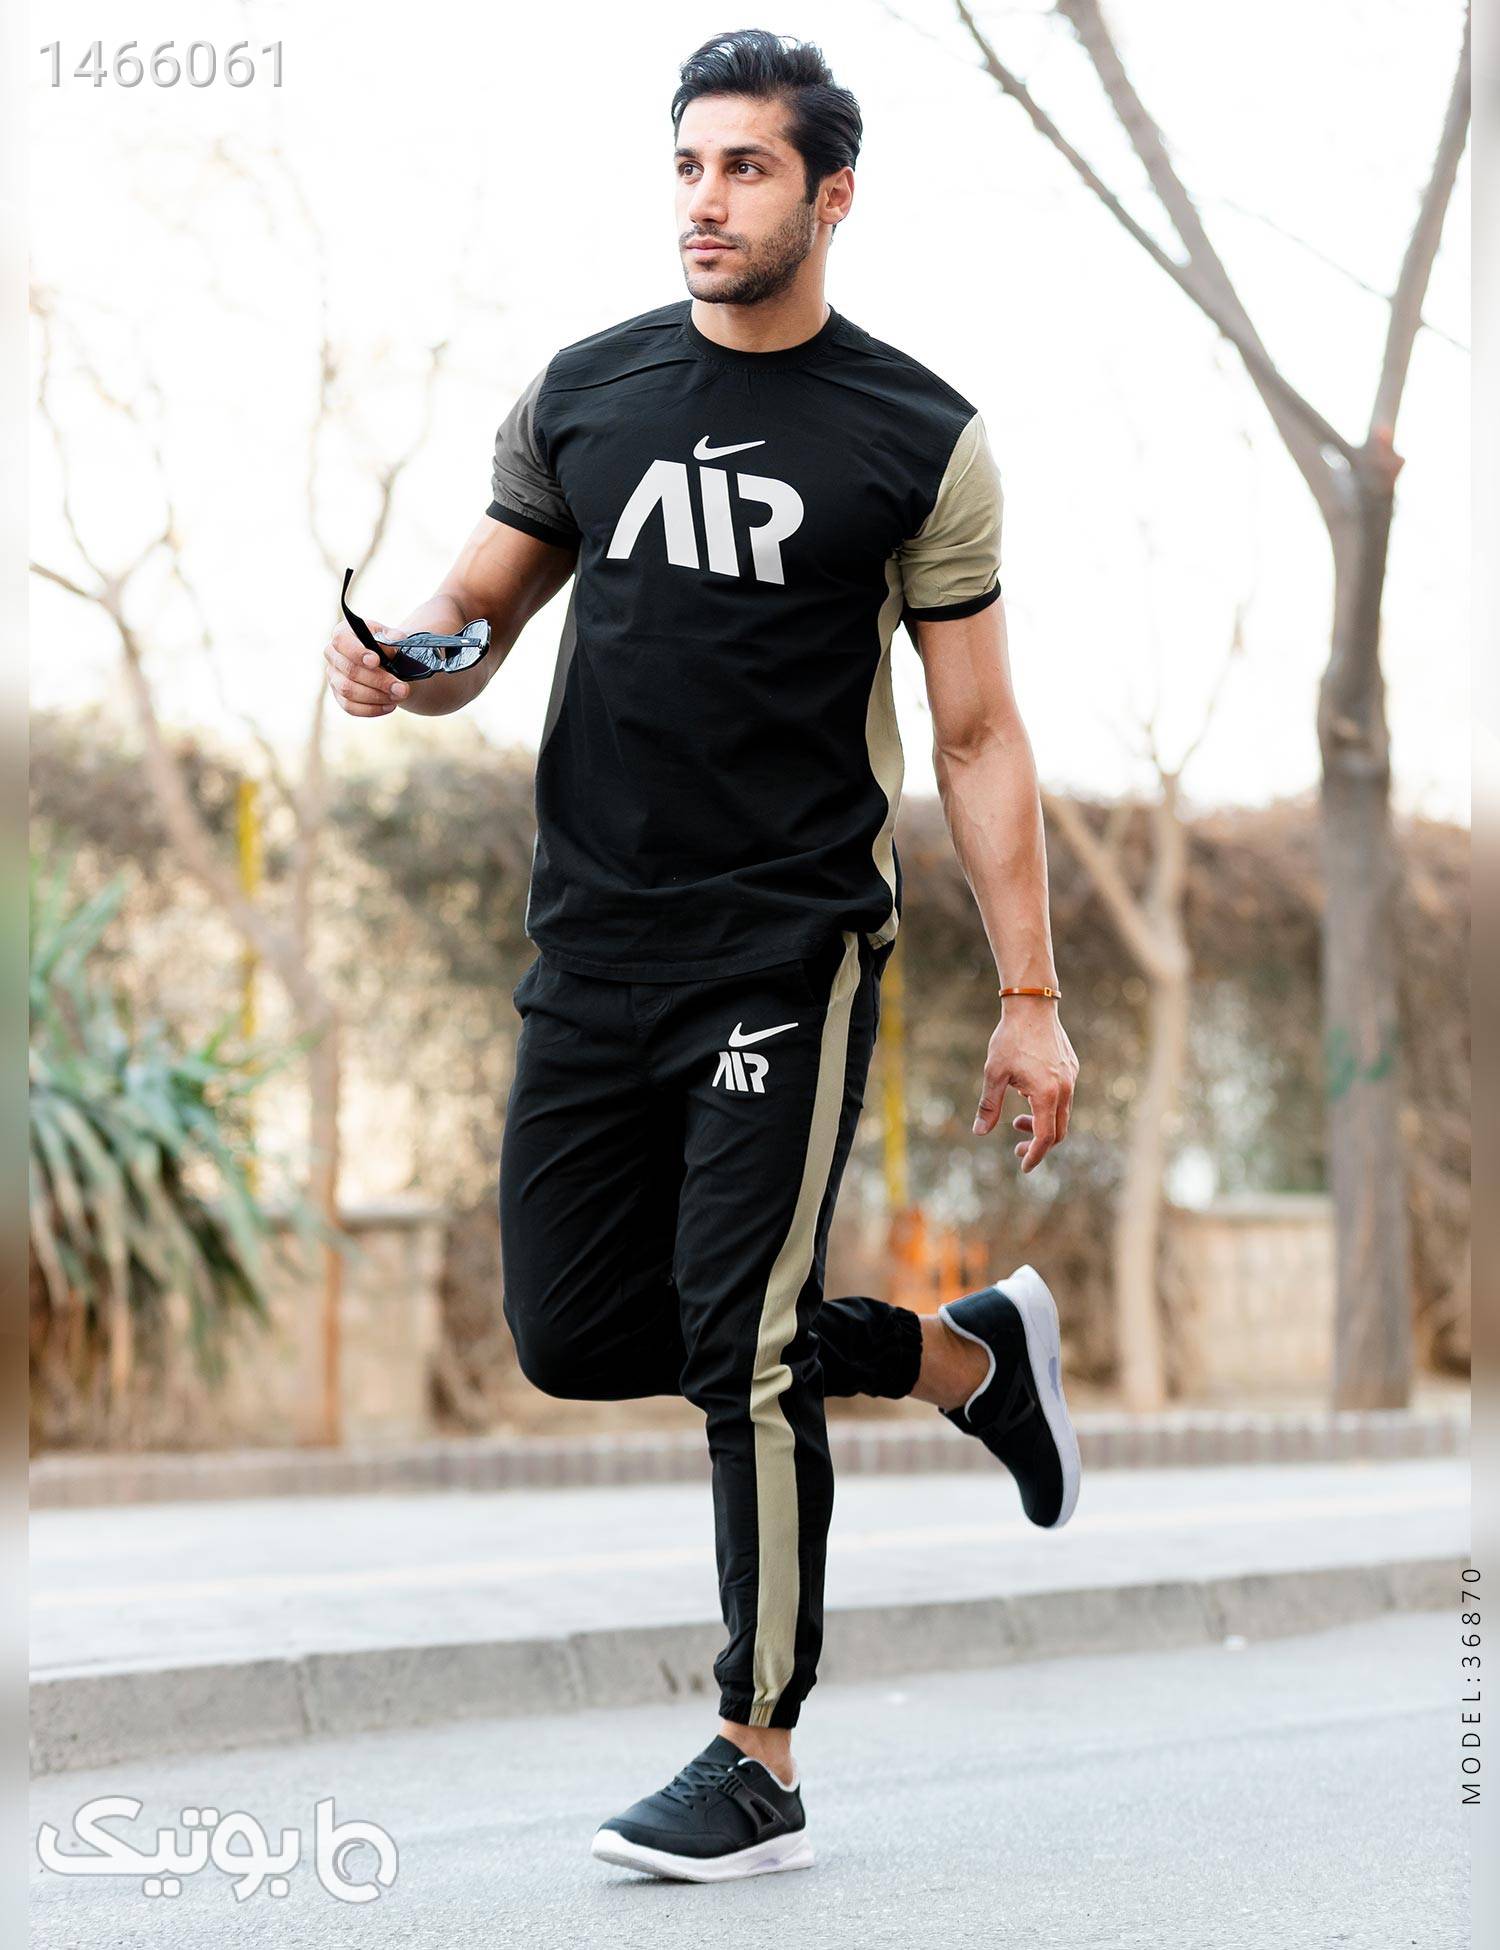 ست تیشرت و شلوار اسپرت Air Nike مدل 36870 مشکی ست ورزشی مردانه